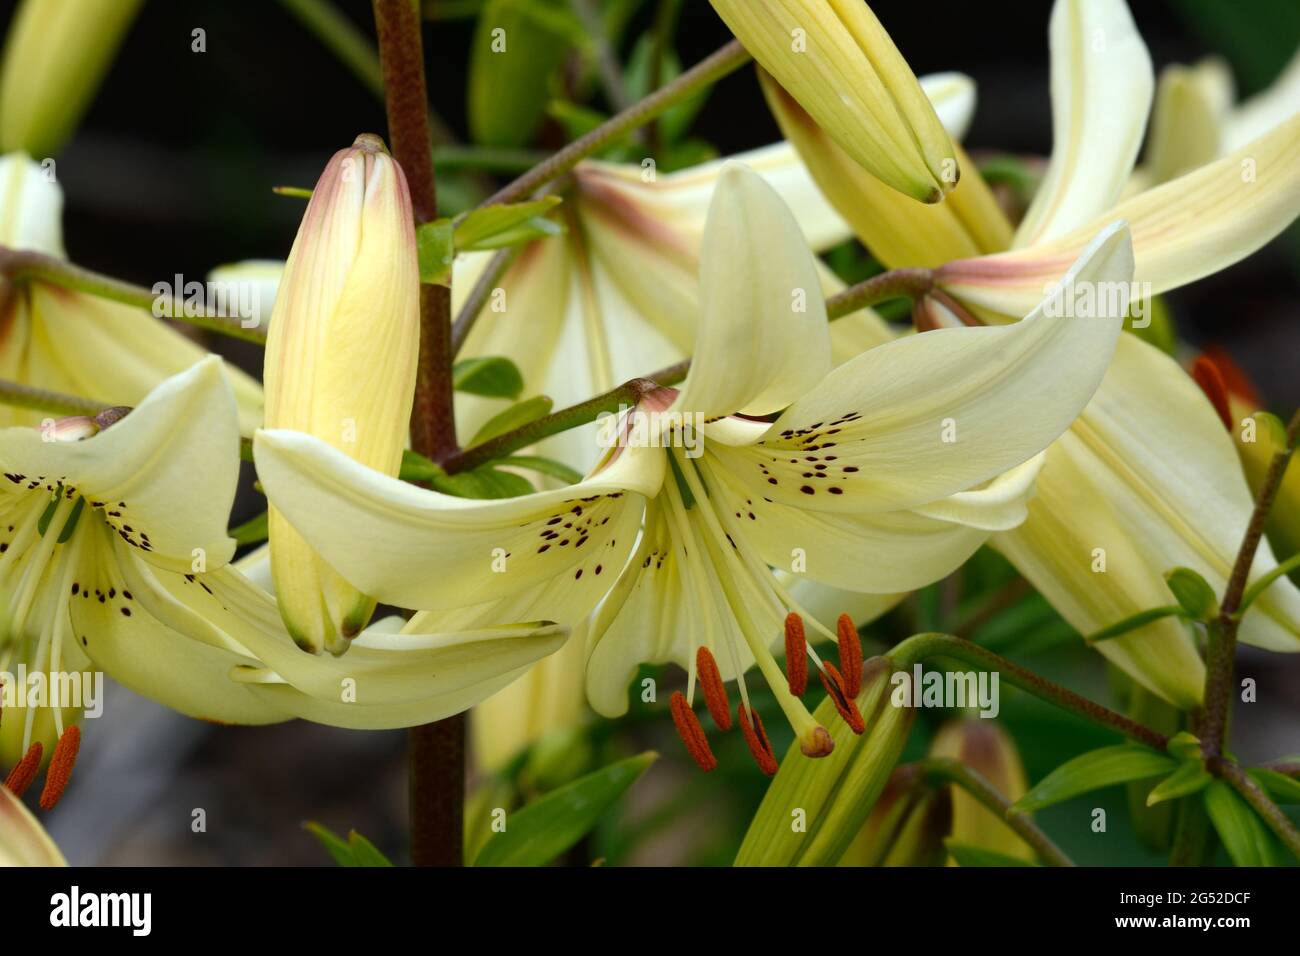 Lilium dolce resa Tigre giglio cremoso fiori bianchi con macchie di maroon e resistenza Foto Stock